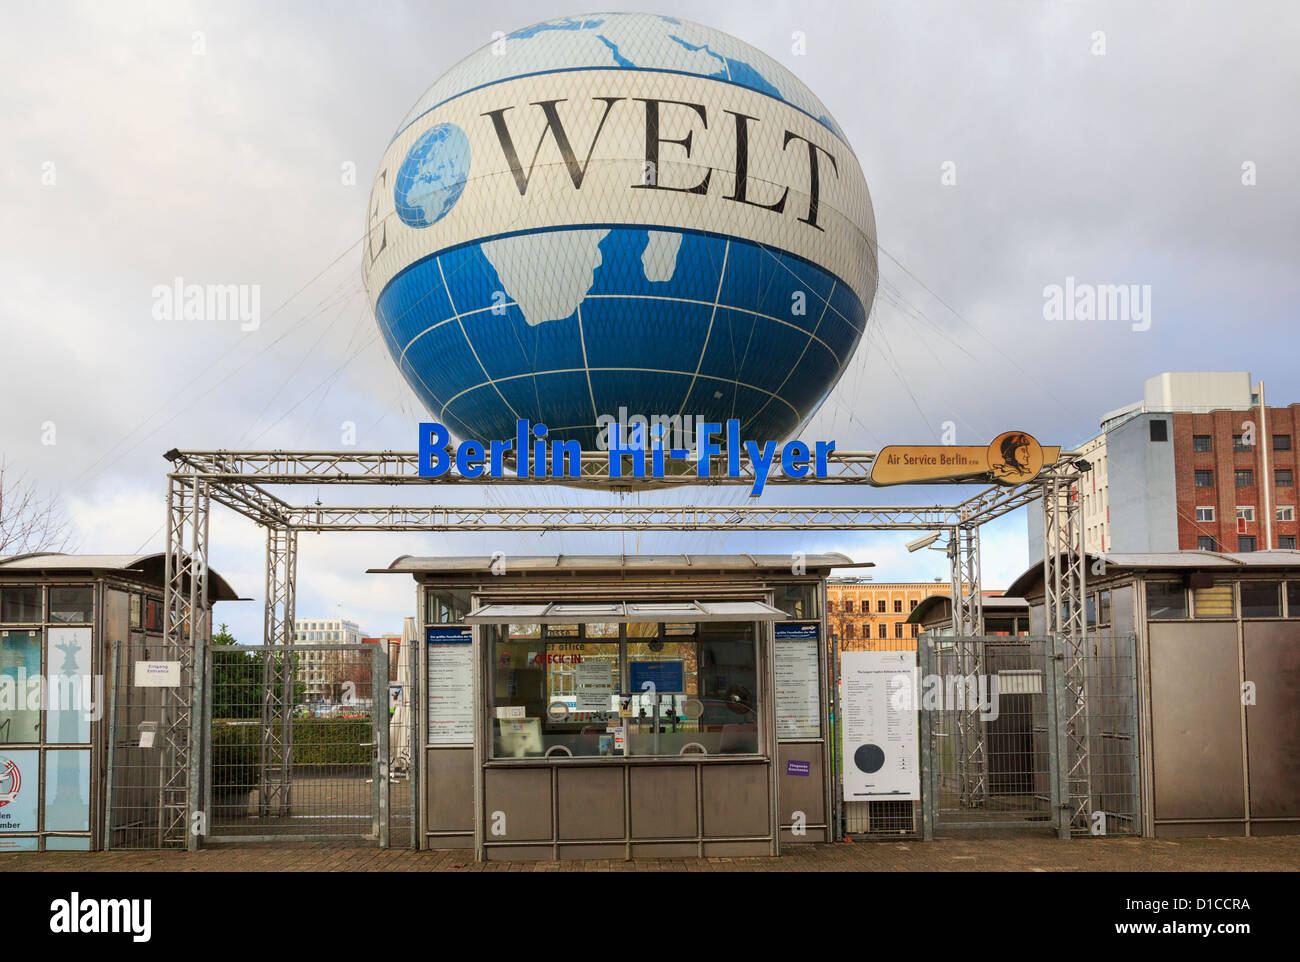 Hi Flyer o Die Welt palloncino gonfiato attrazione turistica è il più grande captive palloncino elio nel mondo. Zimmer, Berlino, Germania Foto Stock